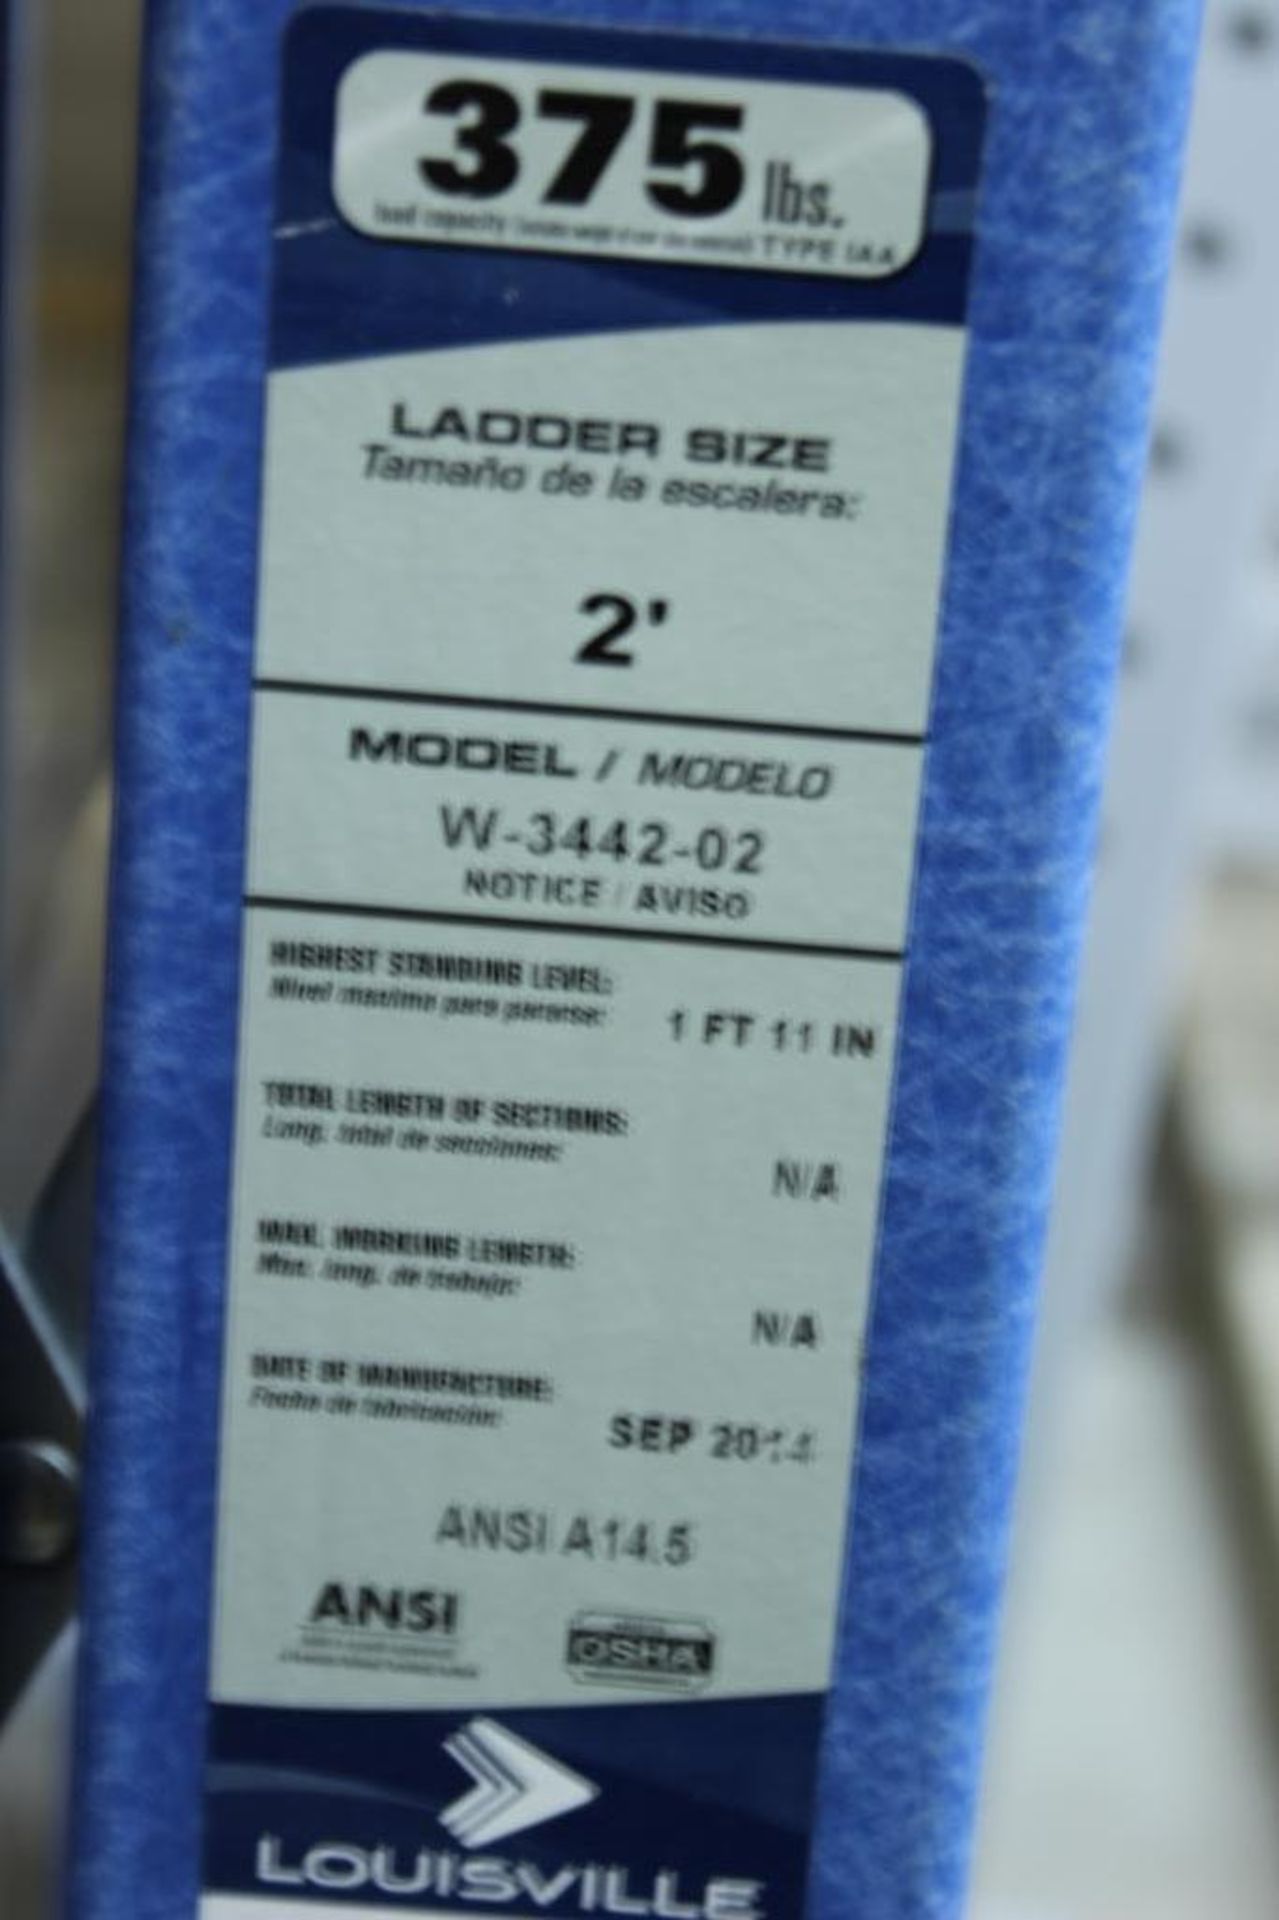 (4) 2' Louisville ladders model # W-3442-02 - Image 2 of 3